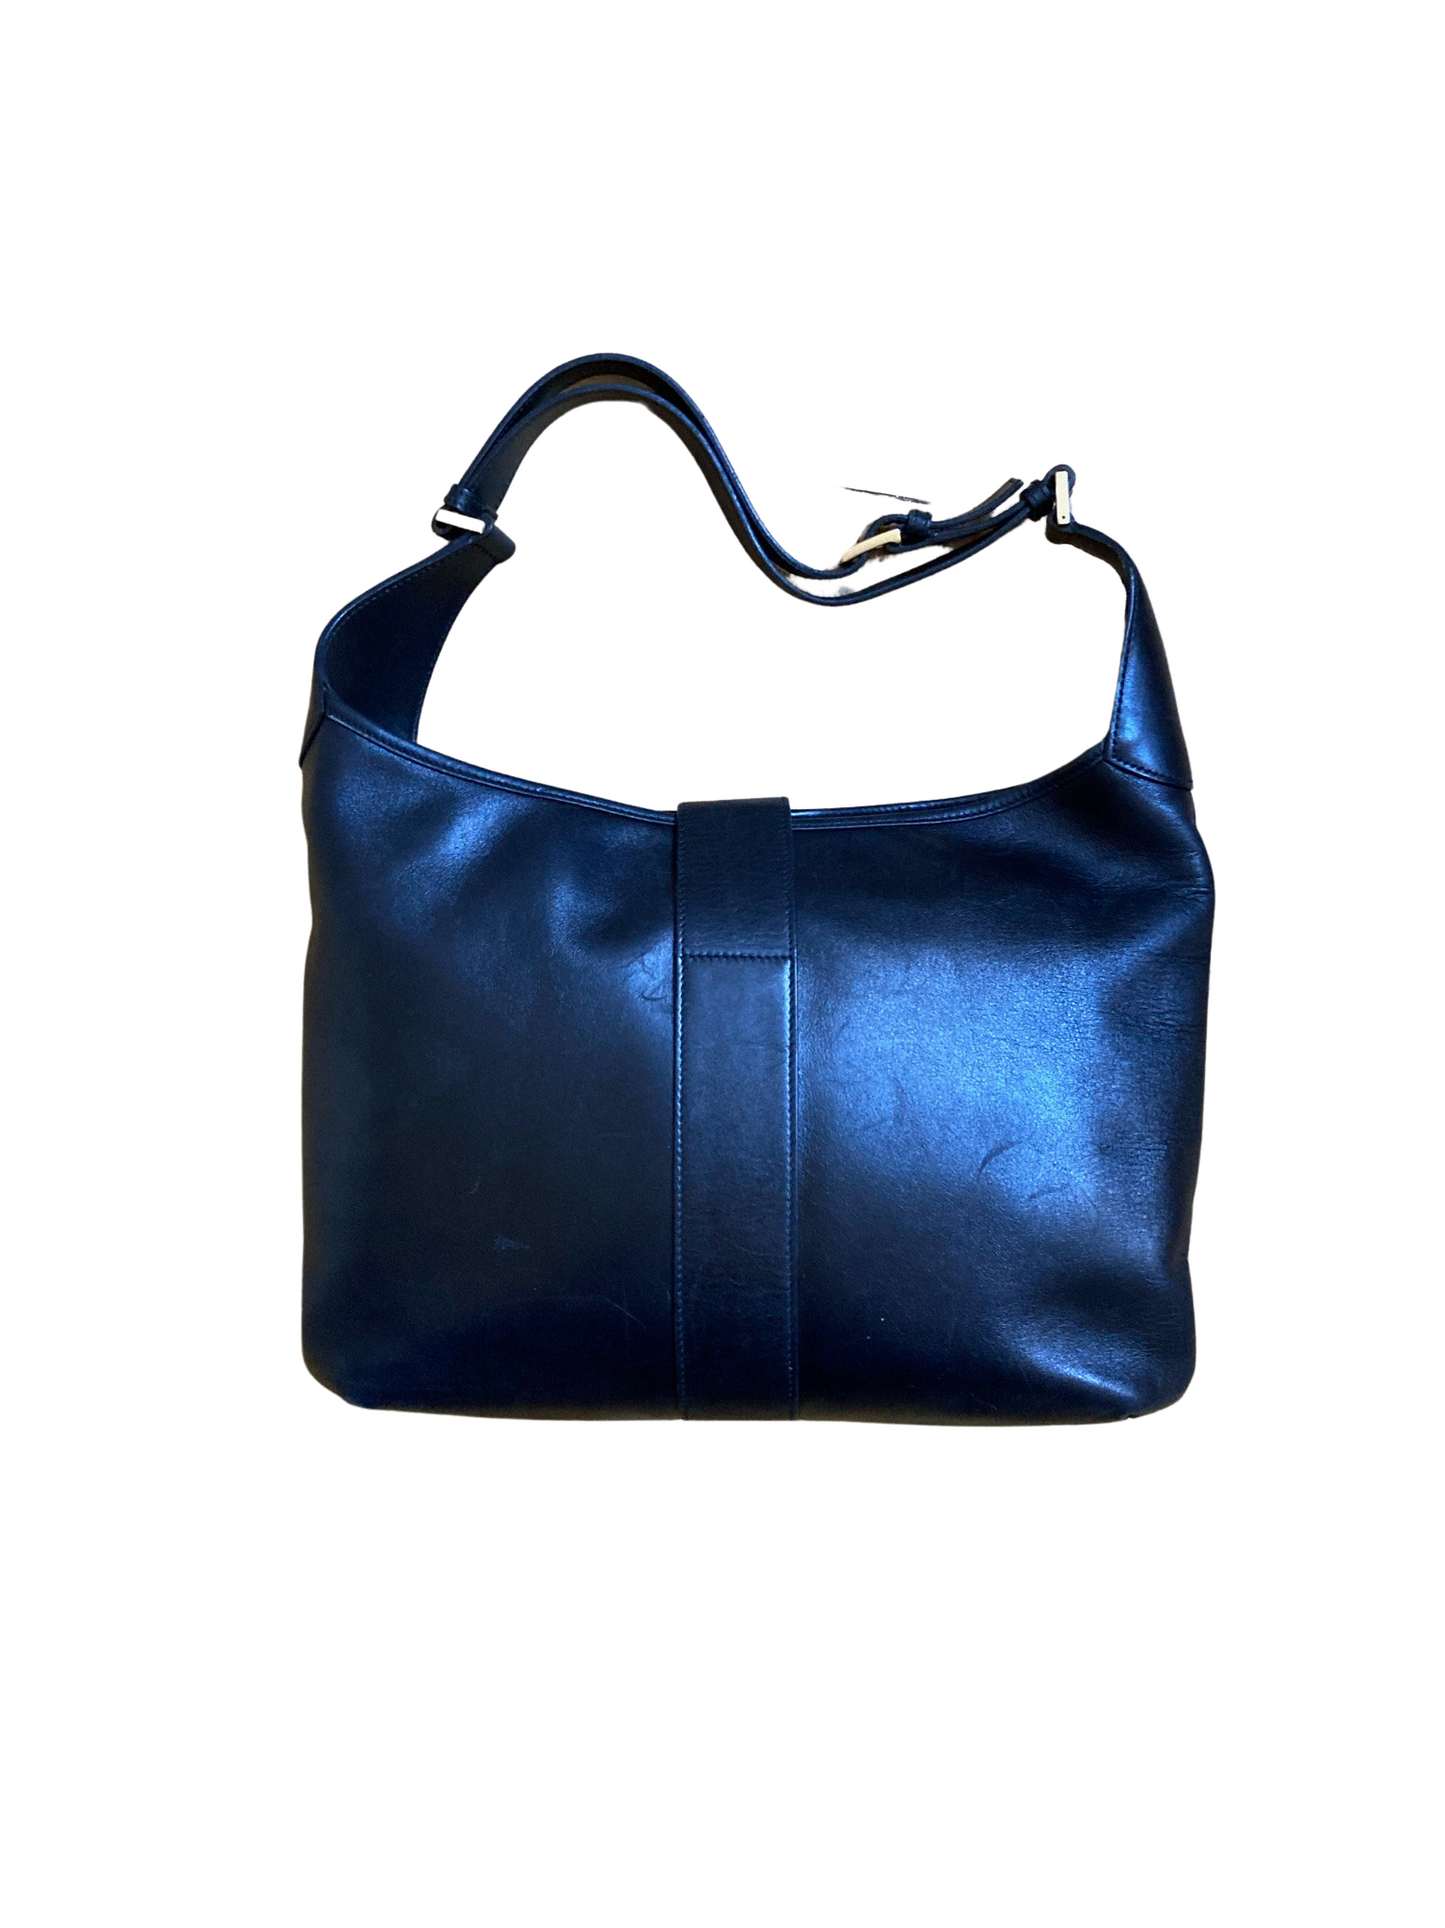 Gucci Dionysus Black Leather Shoulder Bag